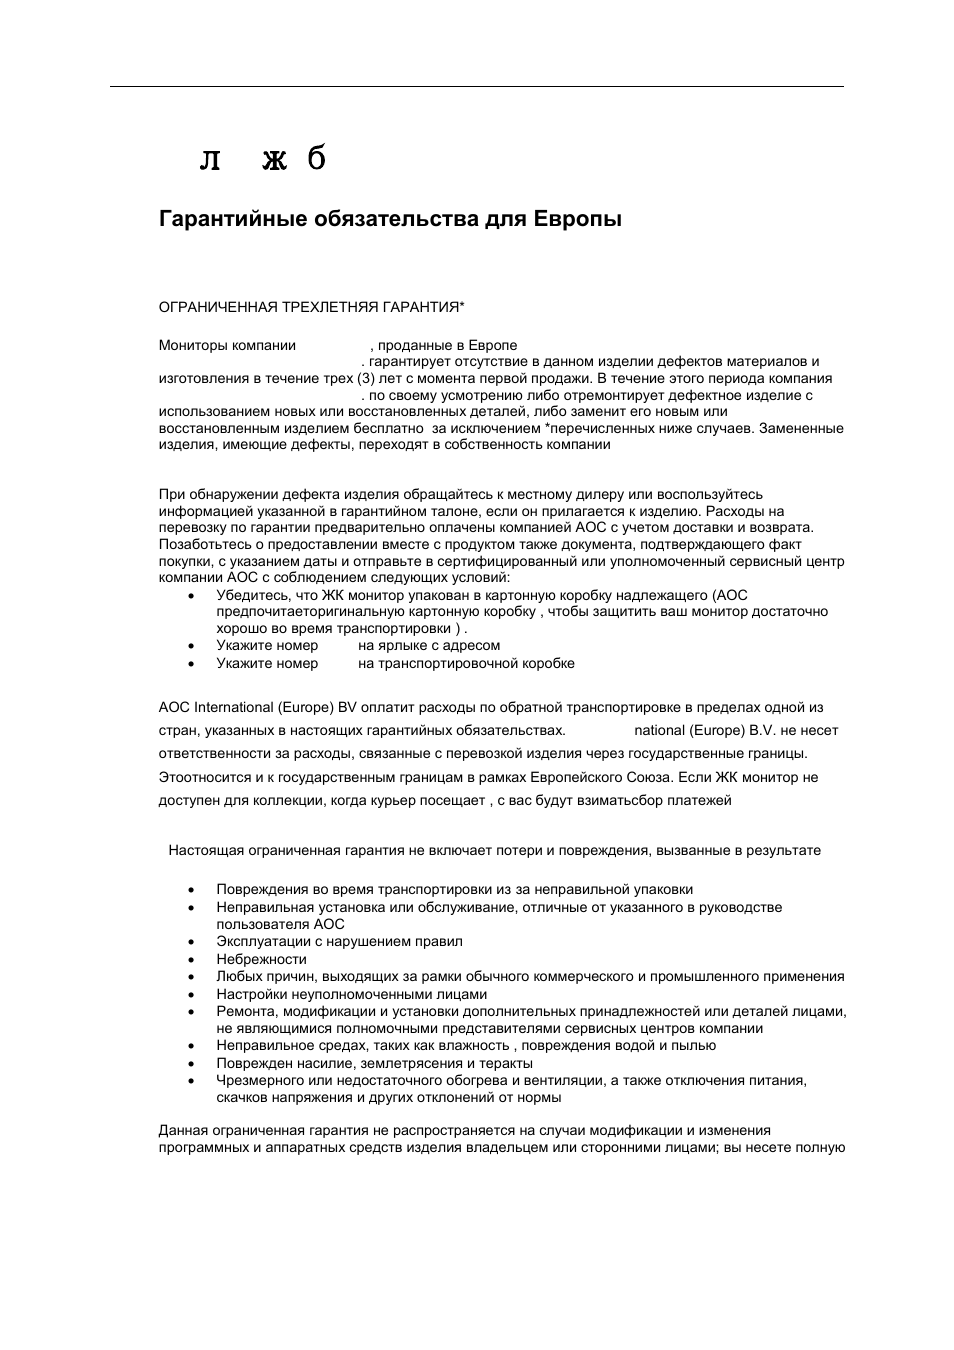 Лyжбa, Гарантийные обязательства для европы, C л y жб a | Инструкция по эксплуатации AOC E2460PQ | Страница 64 / 68